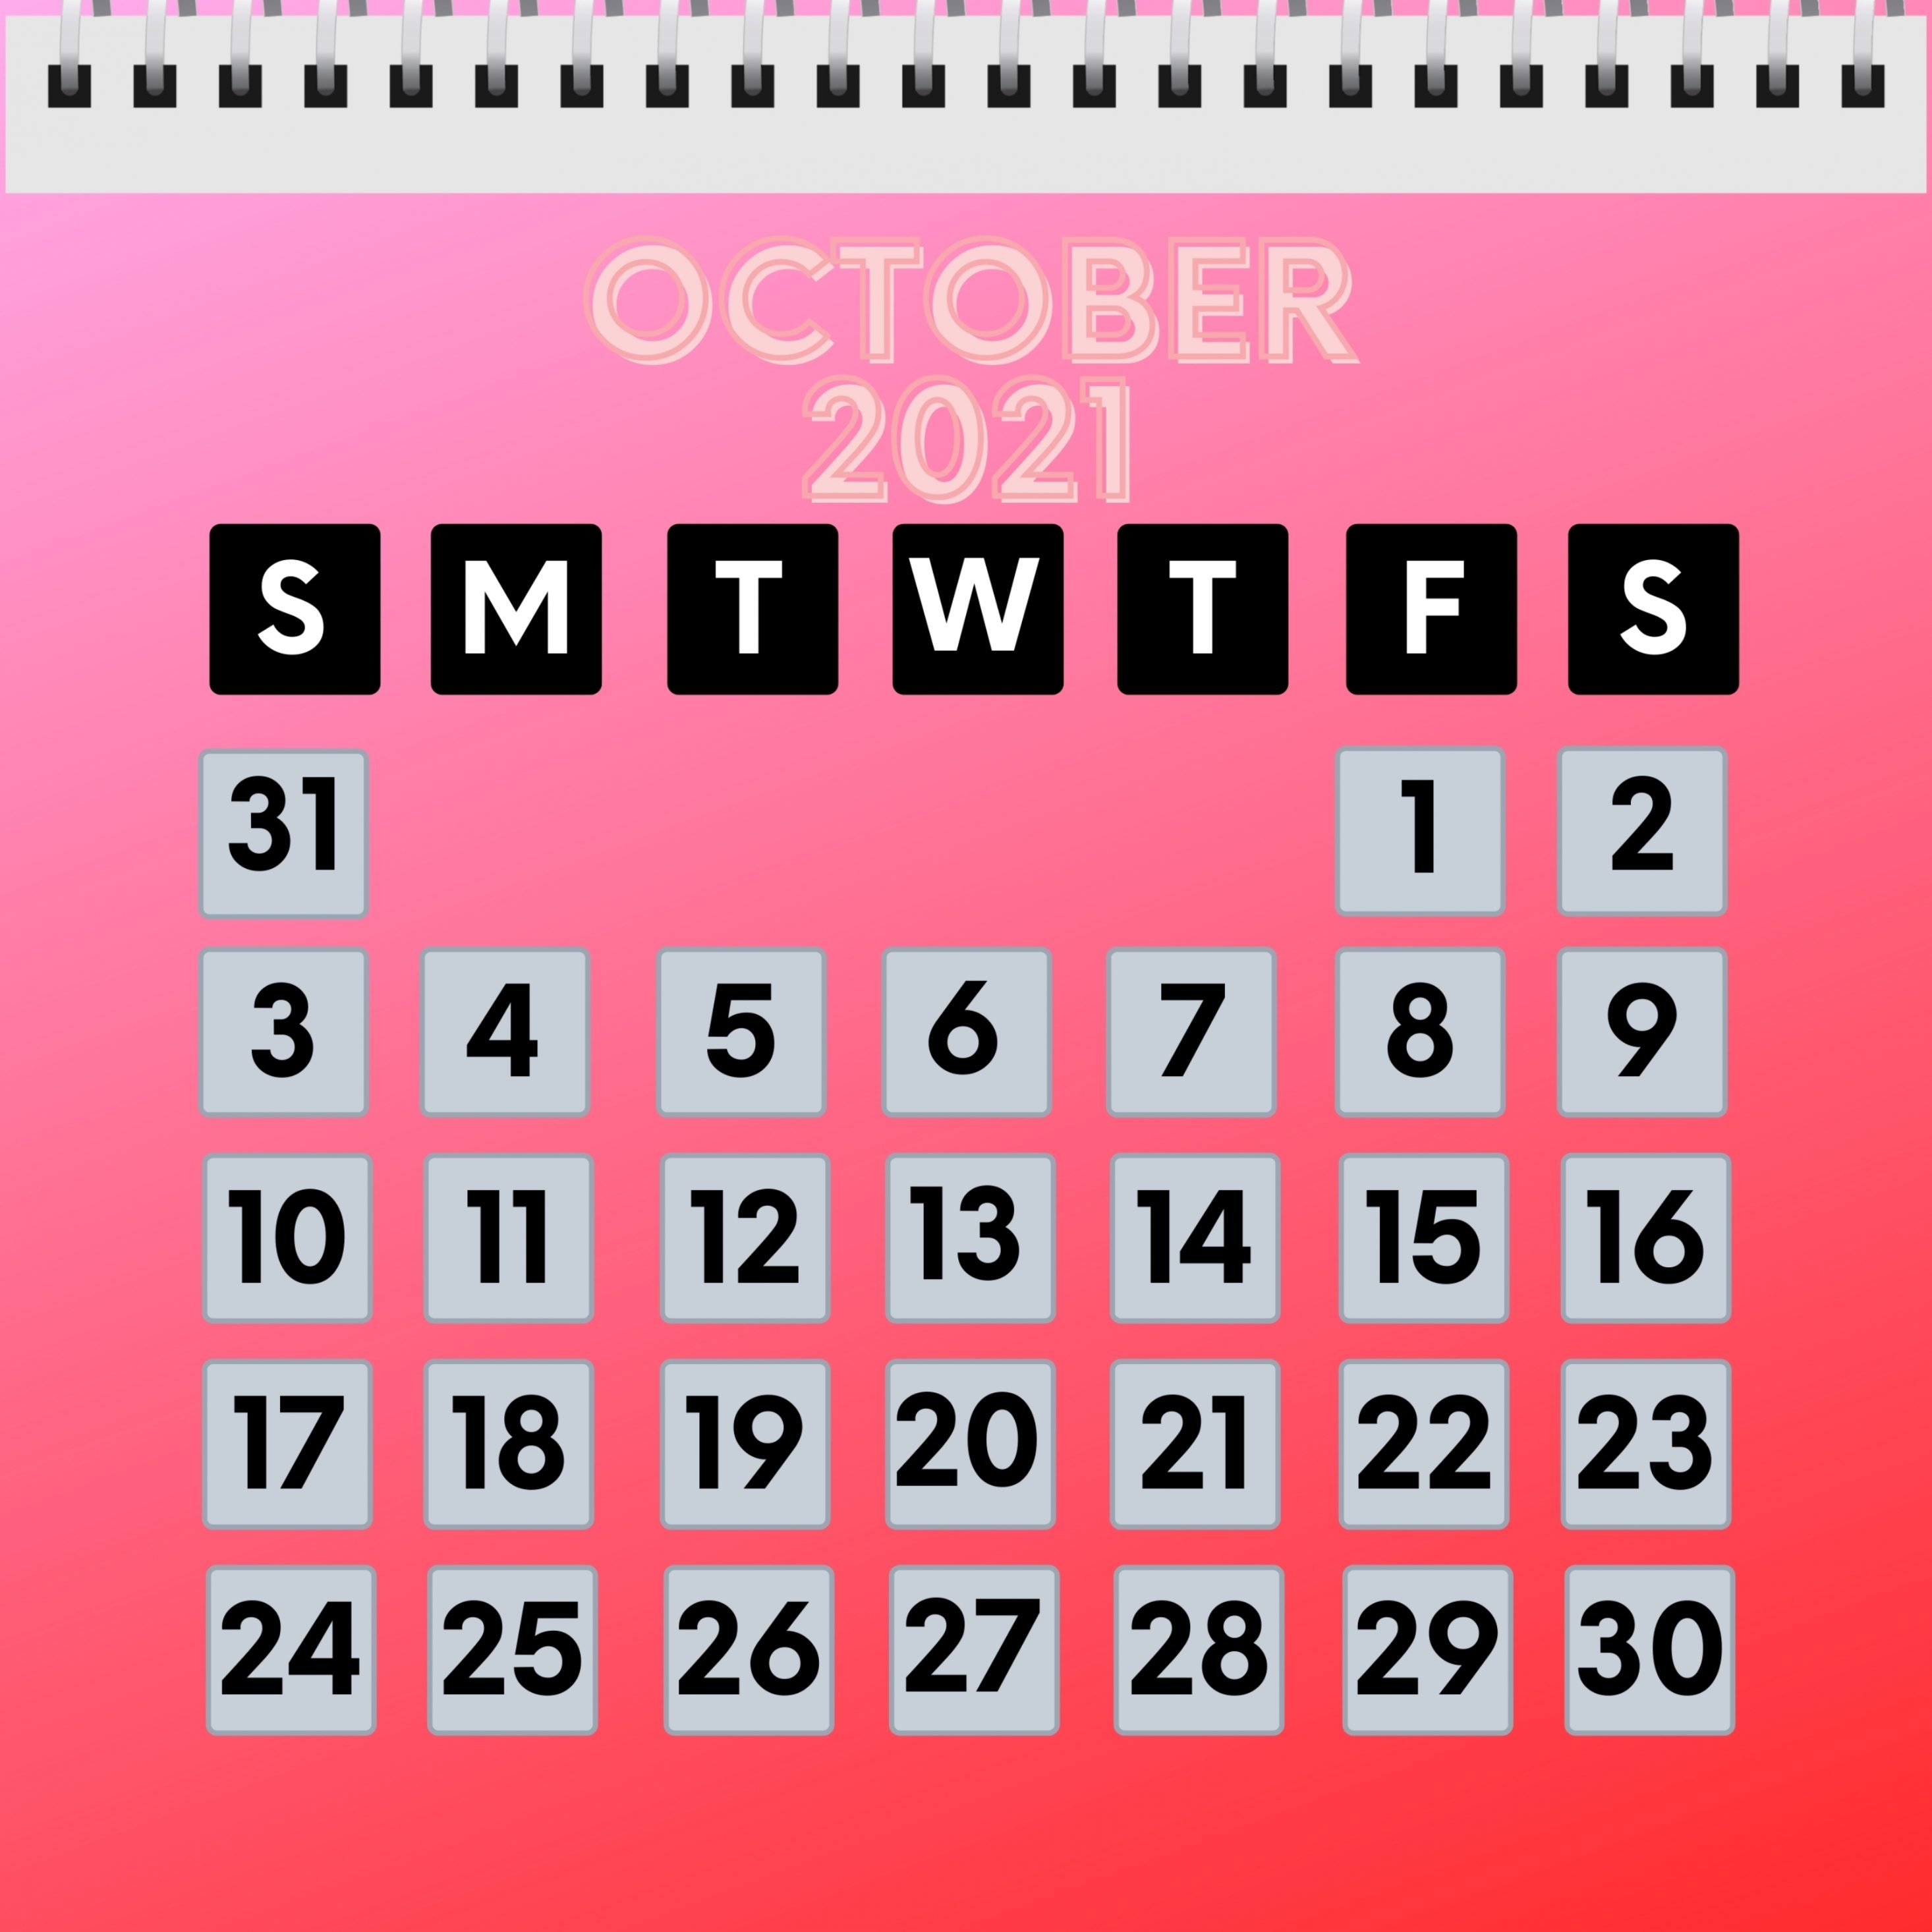 2932x2932 iPad Pro wallpaper 4k October 2021 Calendar iPad Wallpaper 2932x2932 pixels resolution